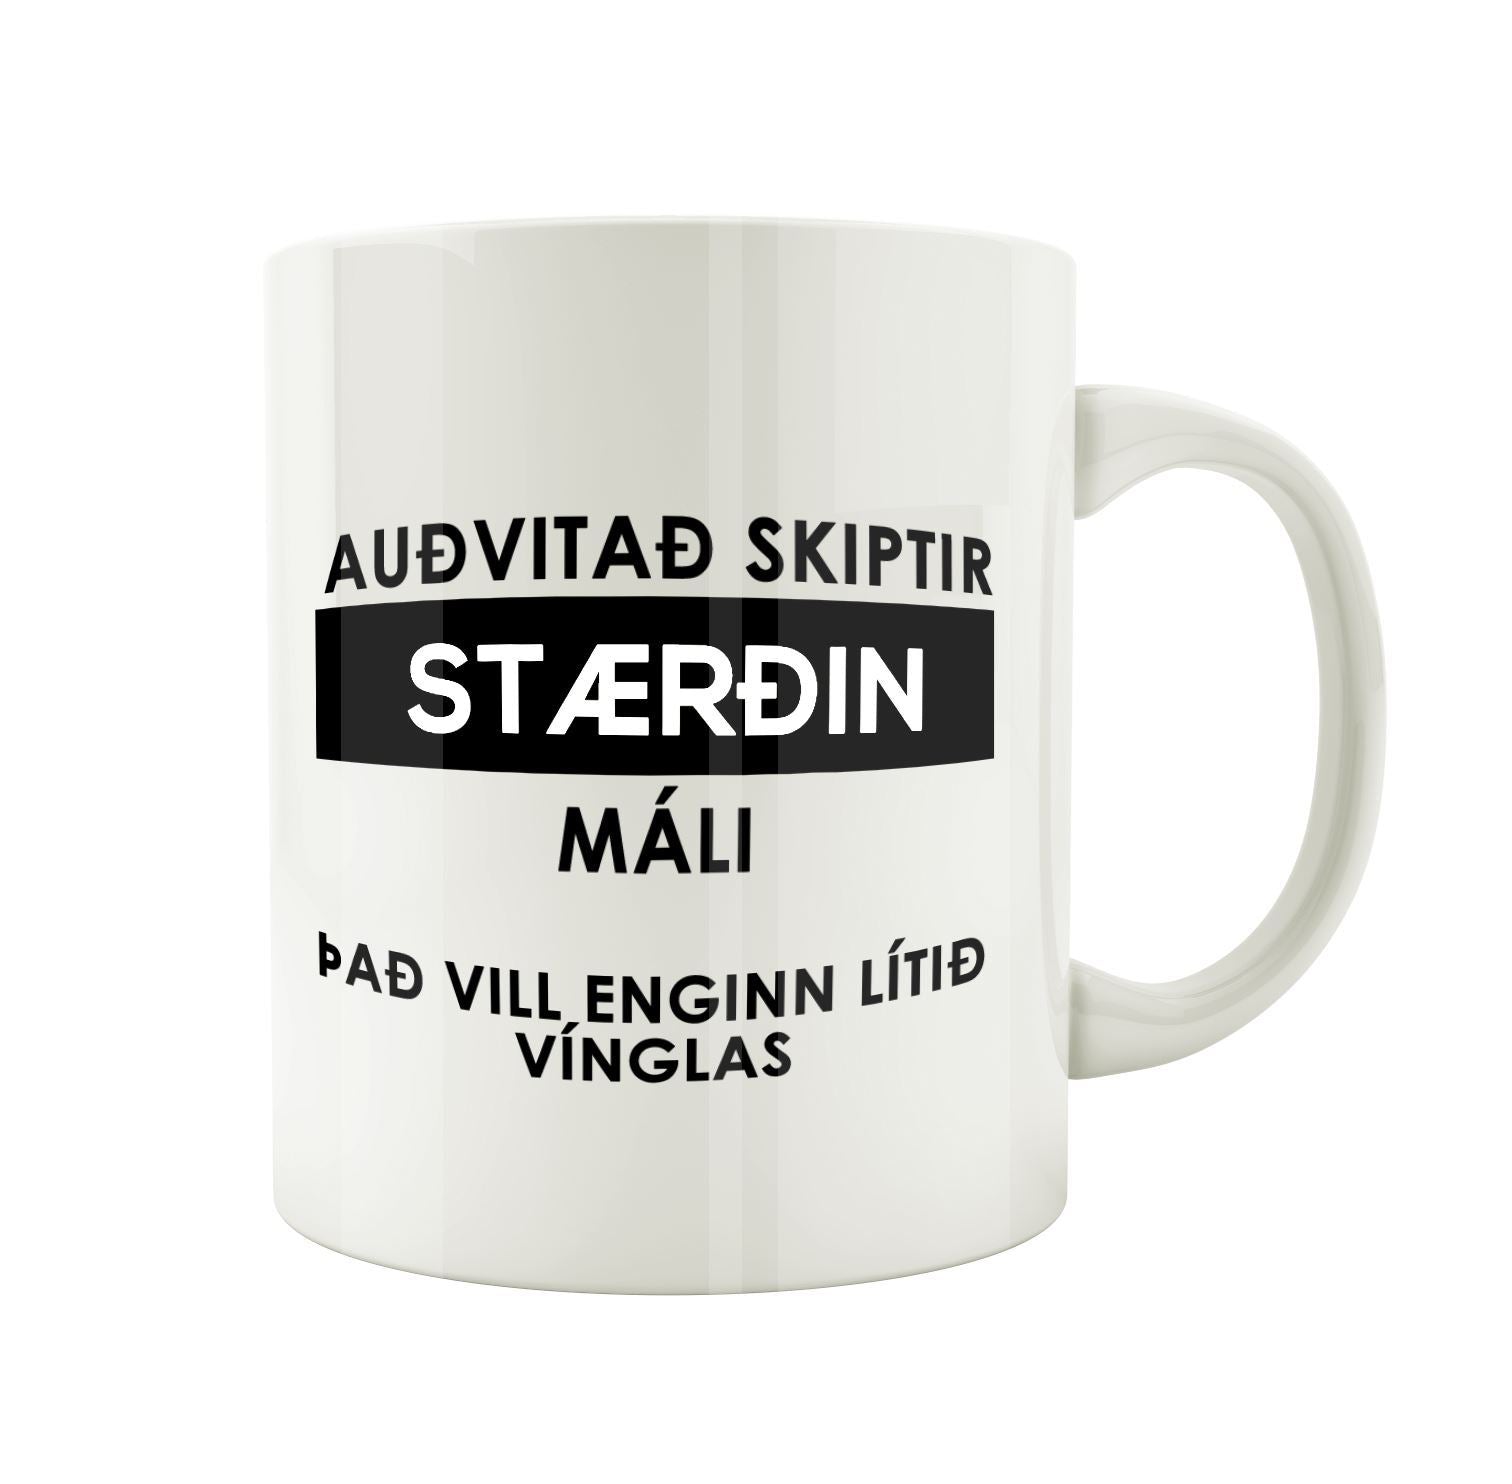 Auðvitað skiptir stærðin máli, það vill engin lítið vínglas.